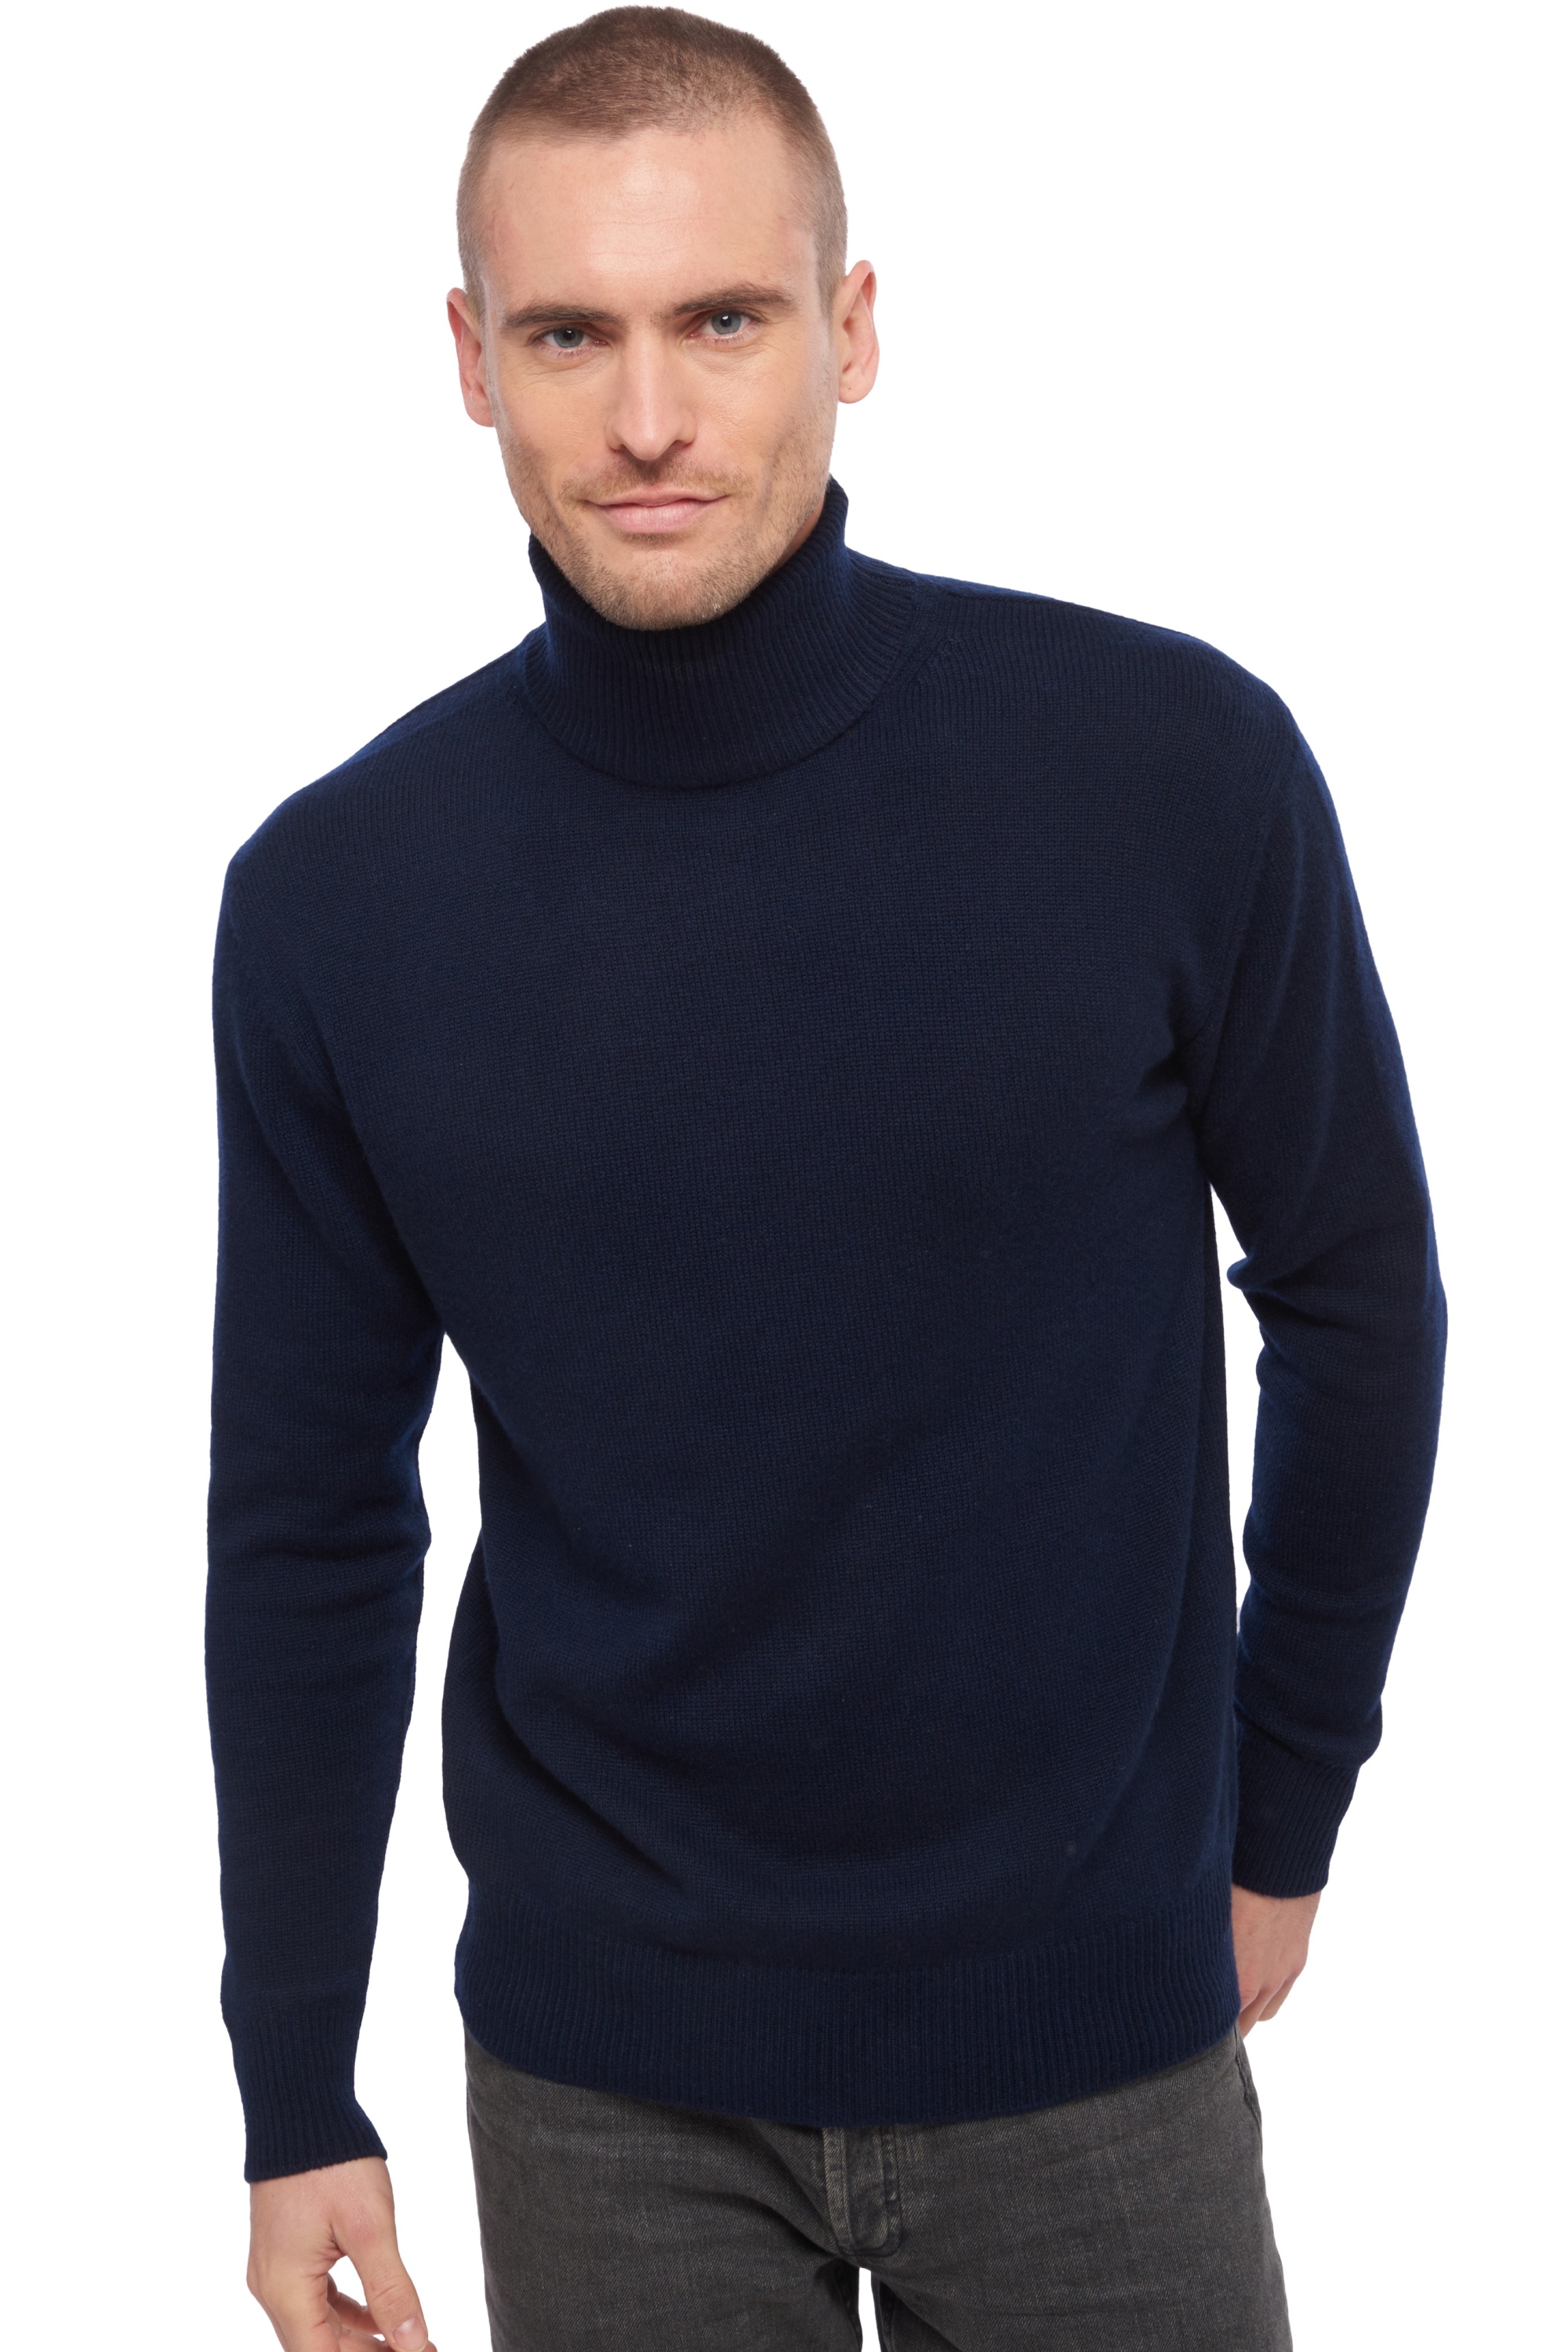 Cashmere men chunky sweater edgar 4f dress blue xl